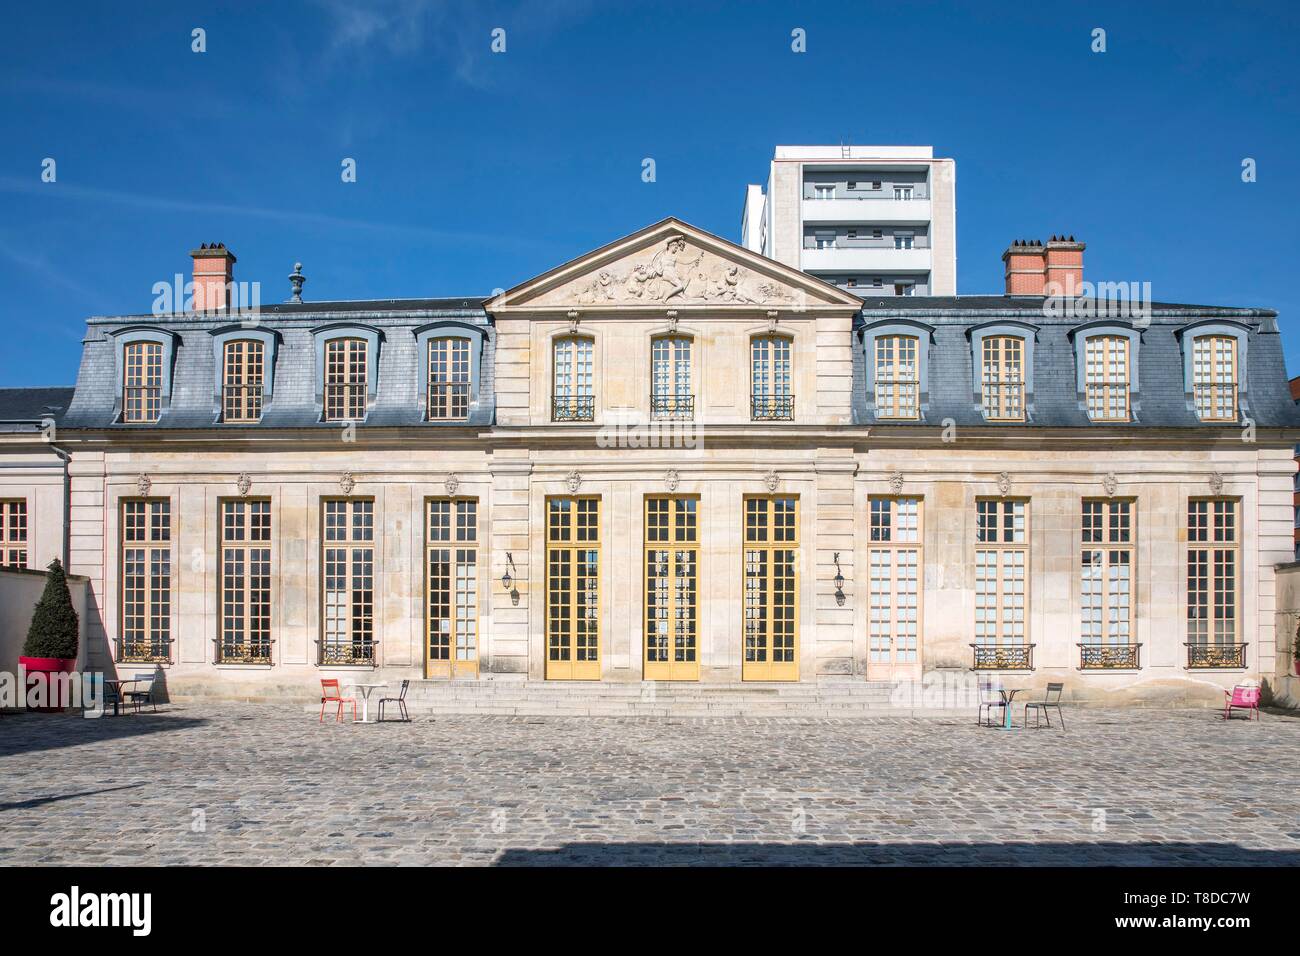 France, Hauts de Seine, Clichy, Pavillon Vend¶me, Art Center Stock Photo